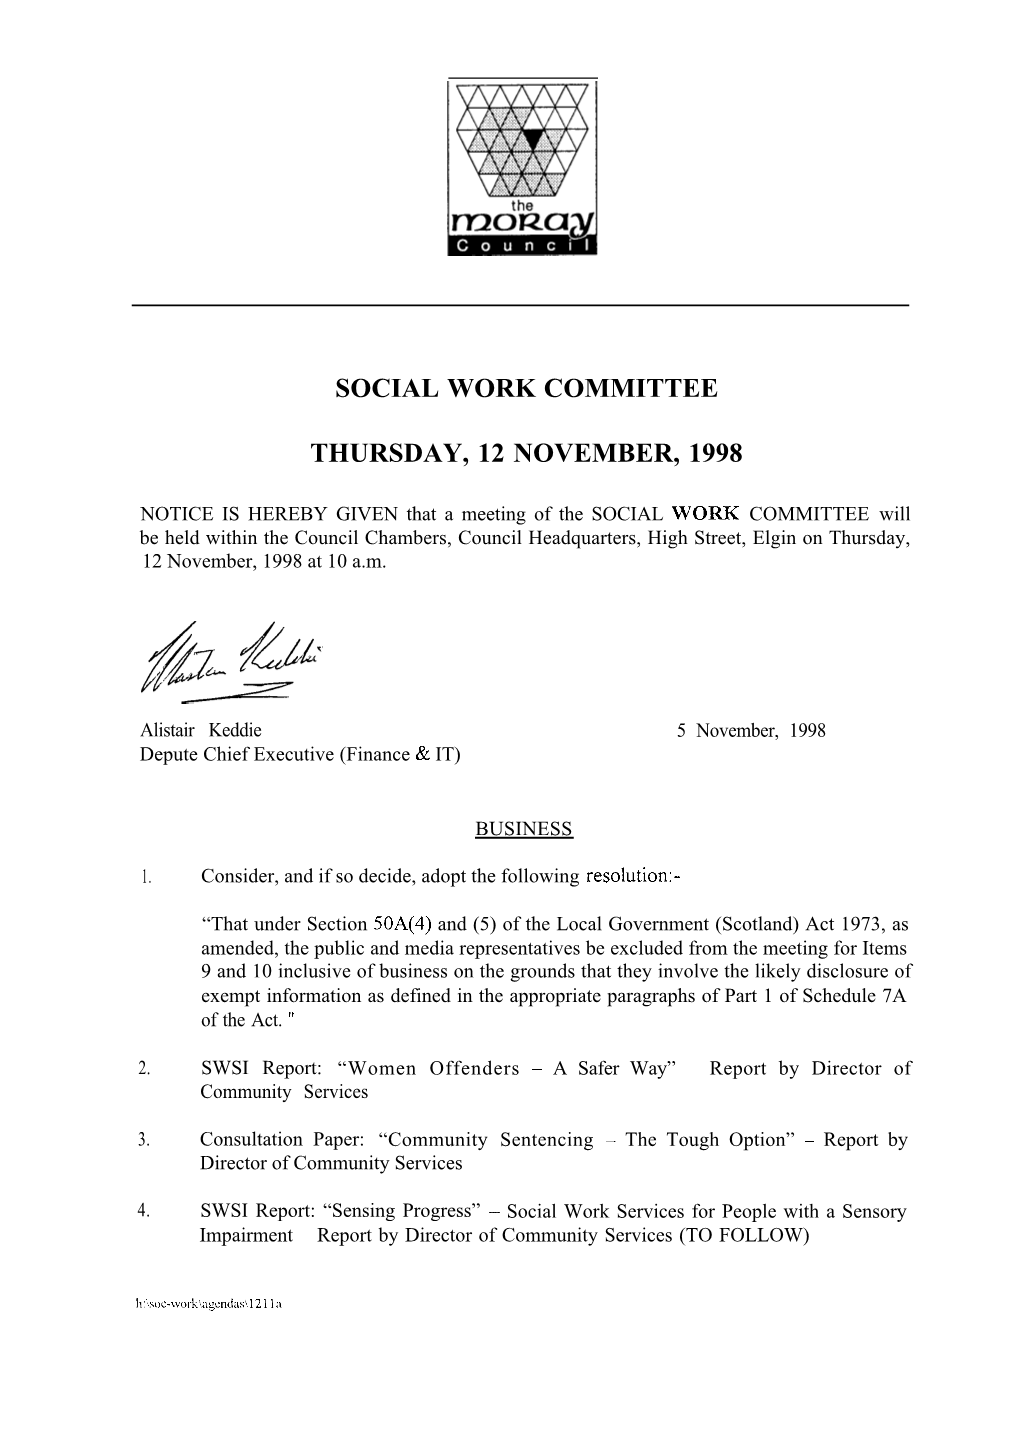 Social Work Committee Thursday, 12 November, 1998